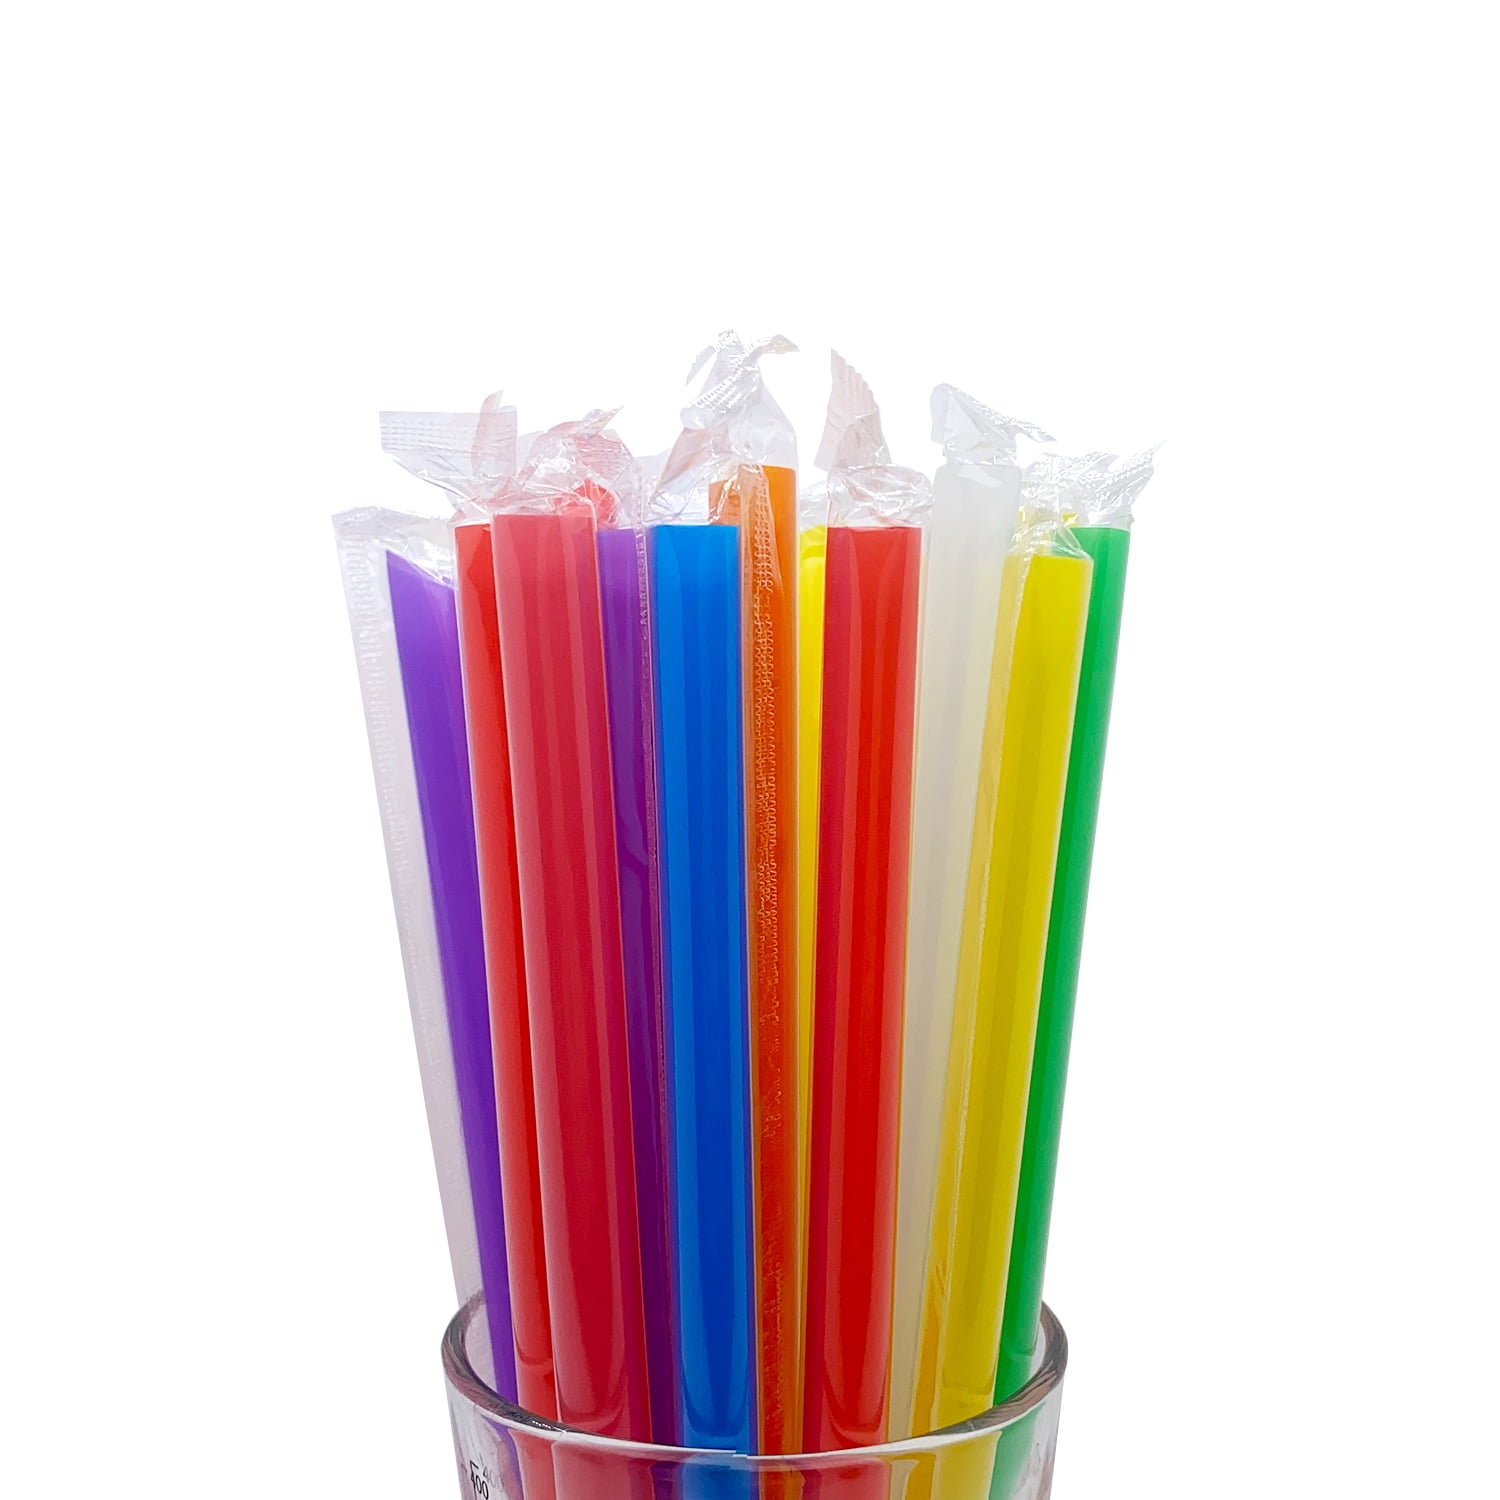 smoothie & boba straws s/2, silicone - Whisk